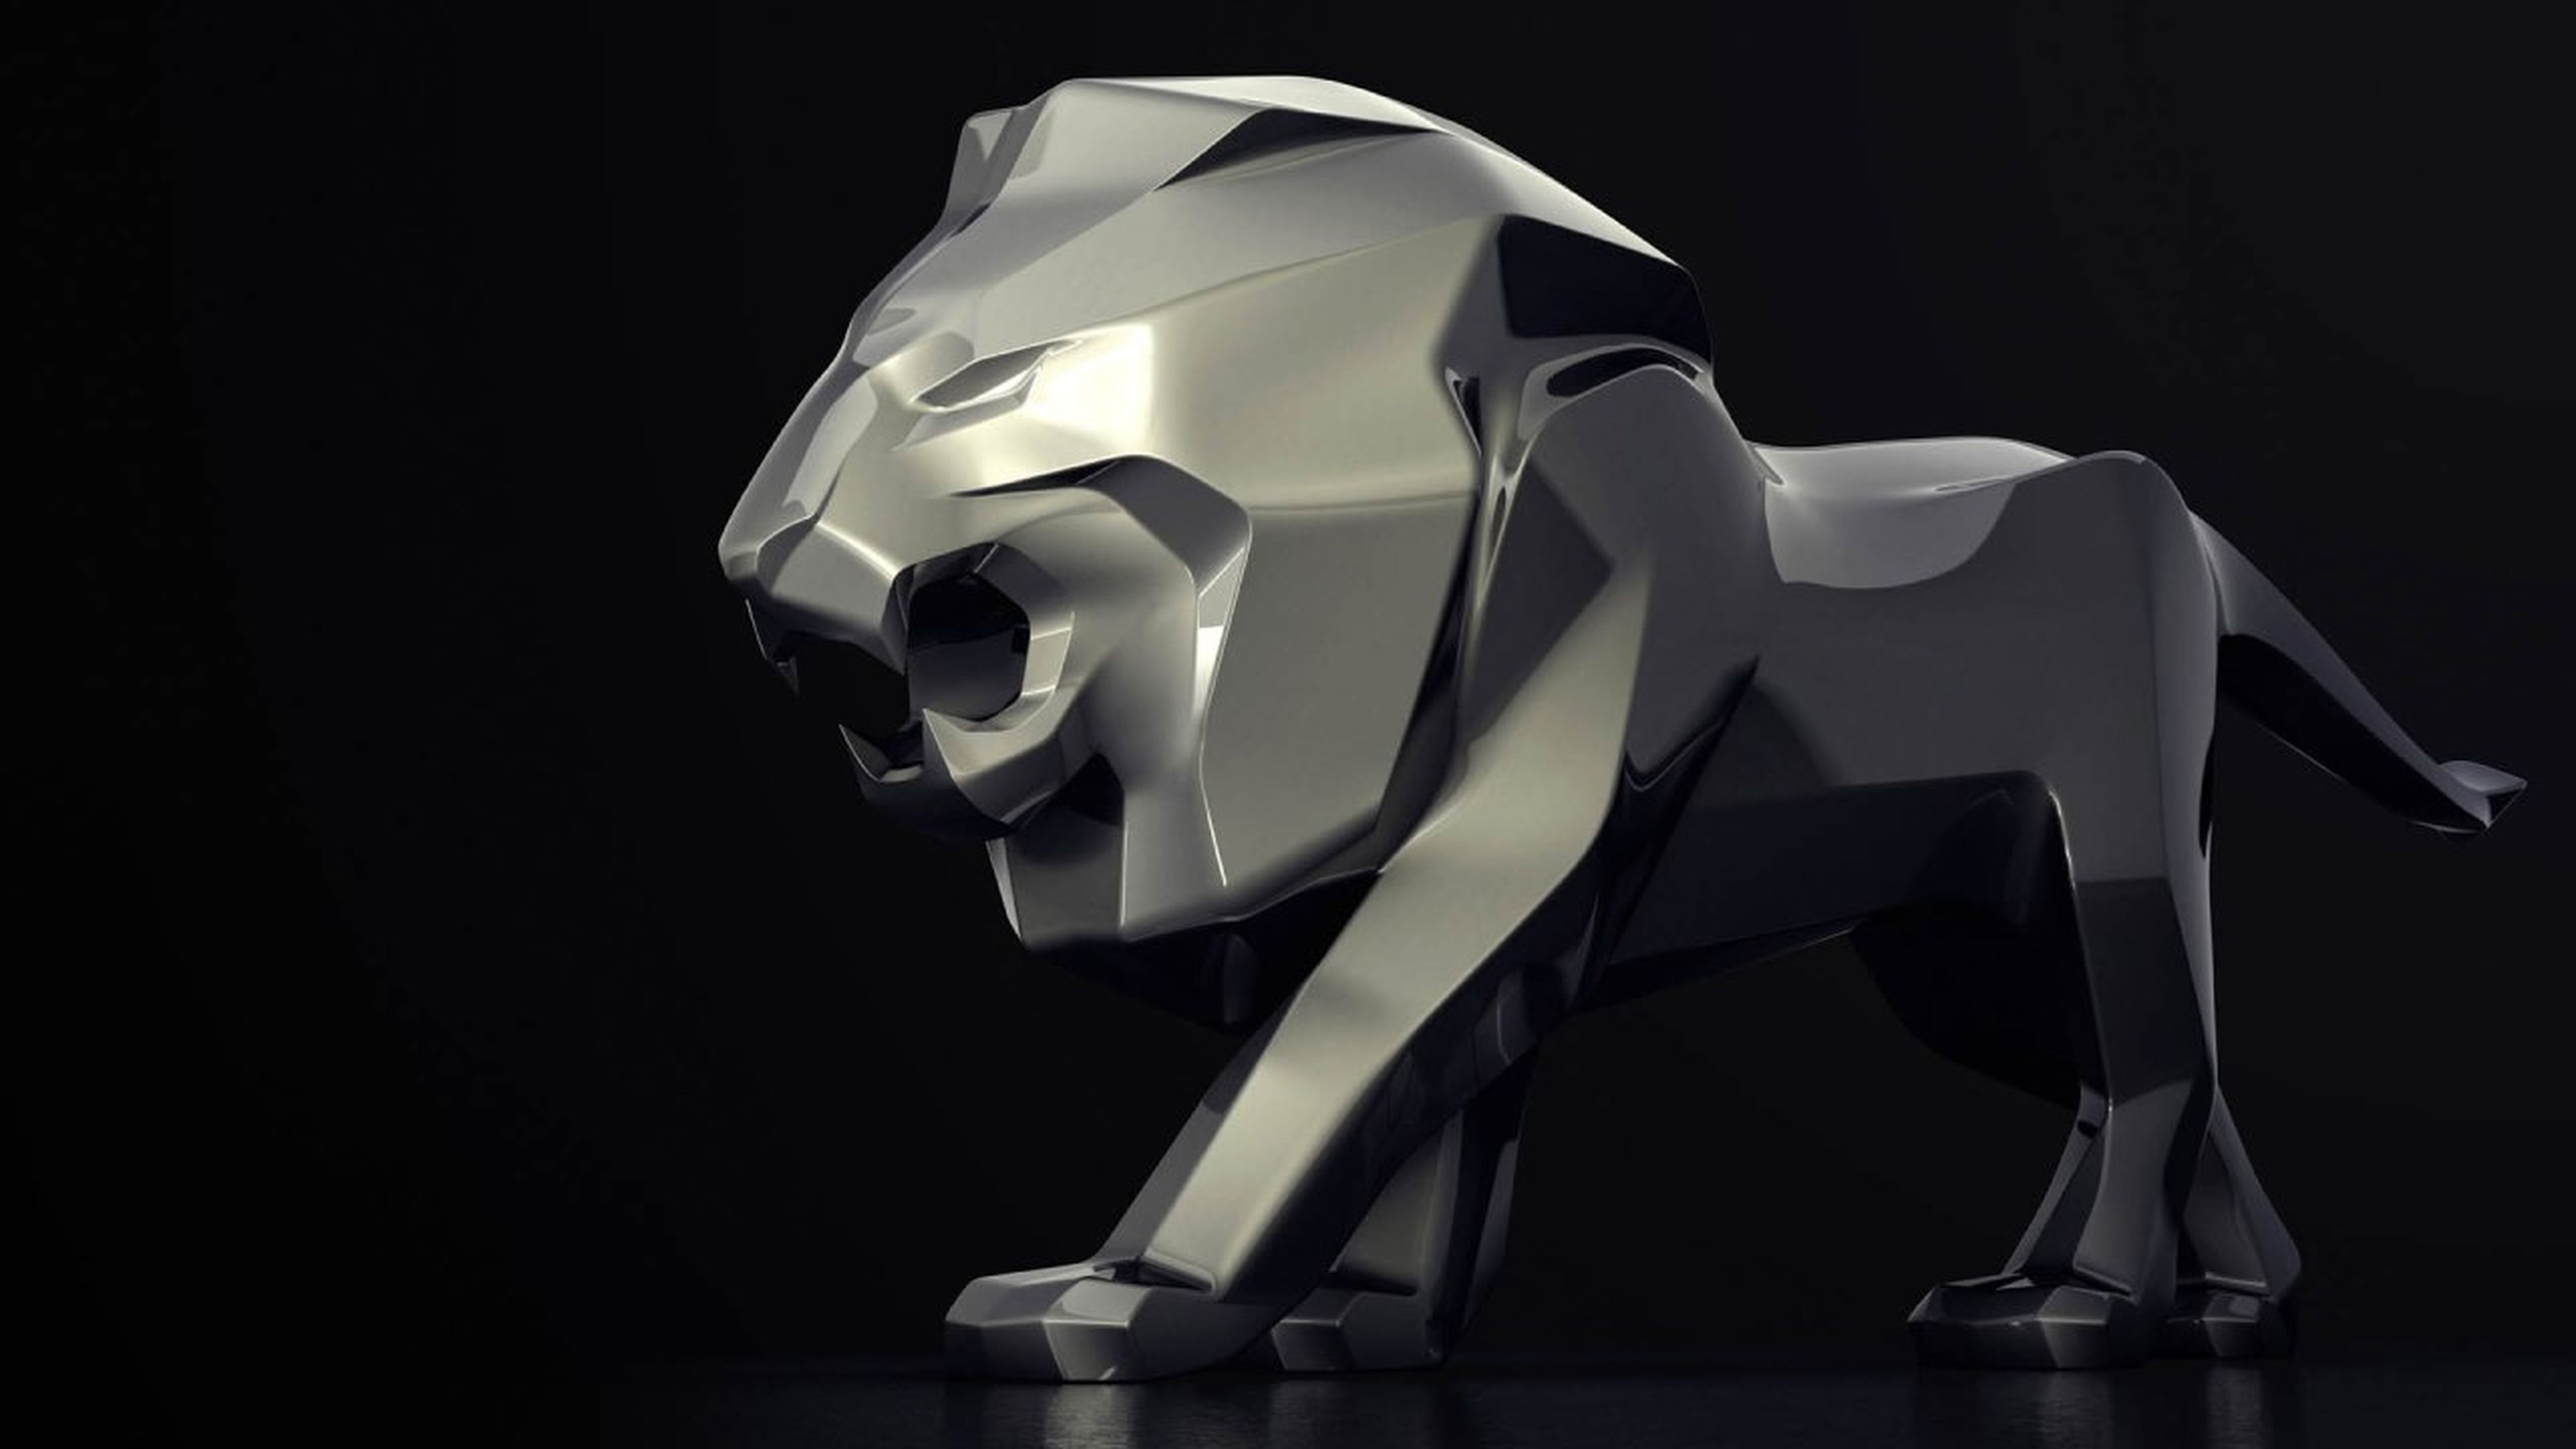 Escultura león Peugeot